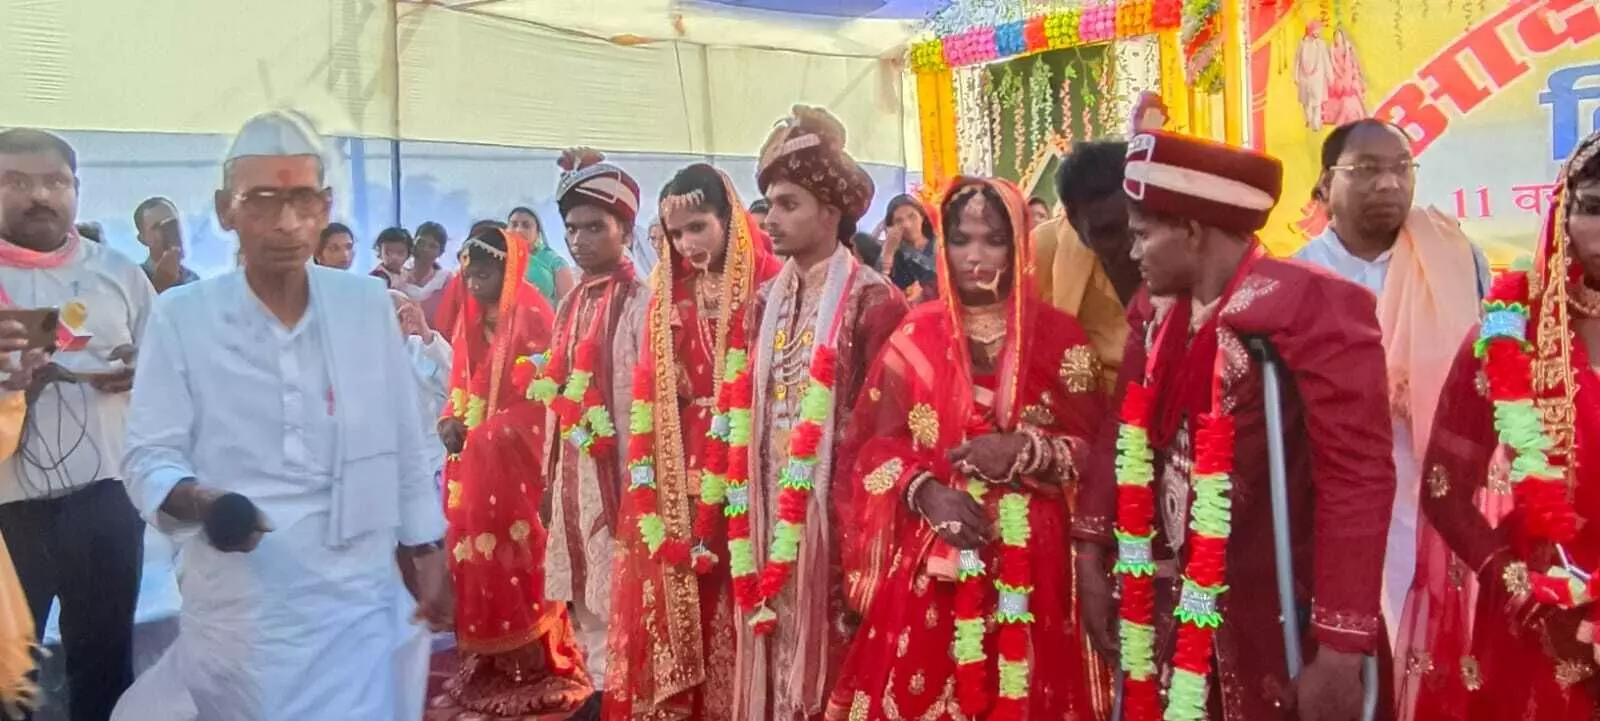 Sawai Madhopur: गौड़ सनाढ्य ब्राह्मण समाज की ओर से सामूहिक विवाह सम्मेलन का आयोजन किया गया